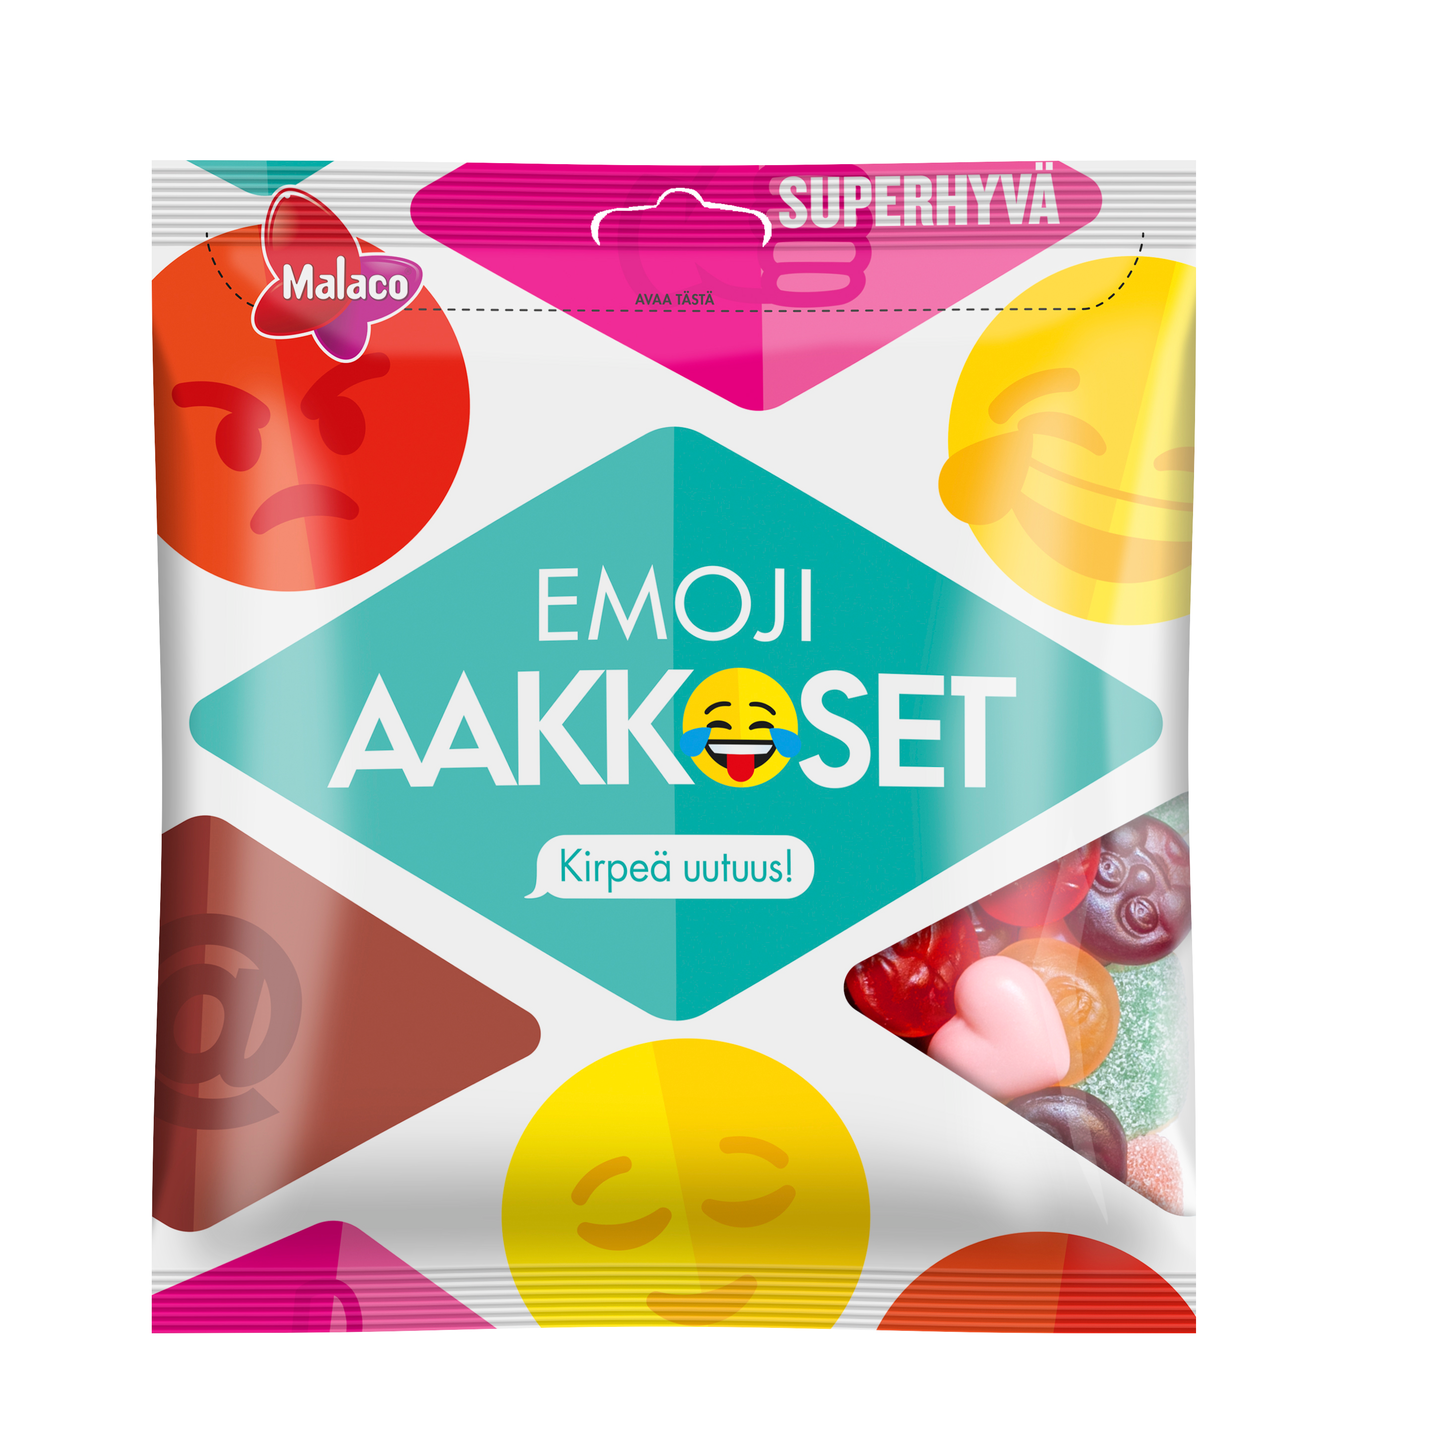 Malaco Aakkoset makeissekoitus 315g Emoji | K-Ruoka Verkkokauppa